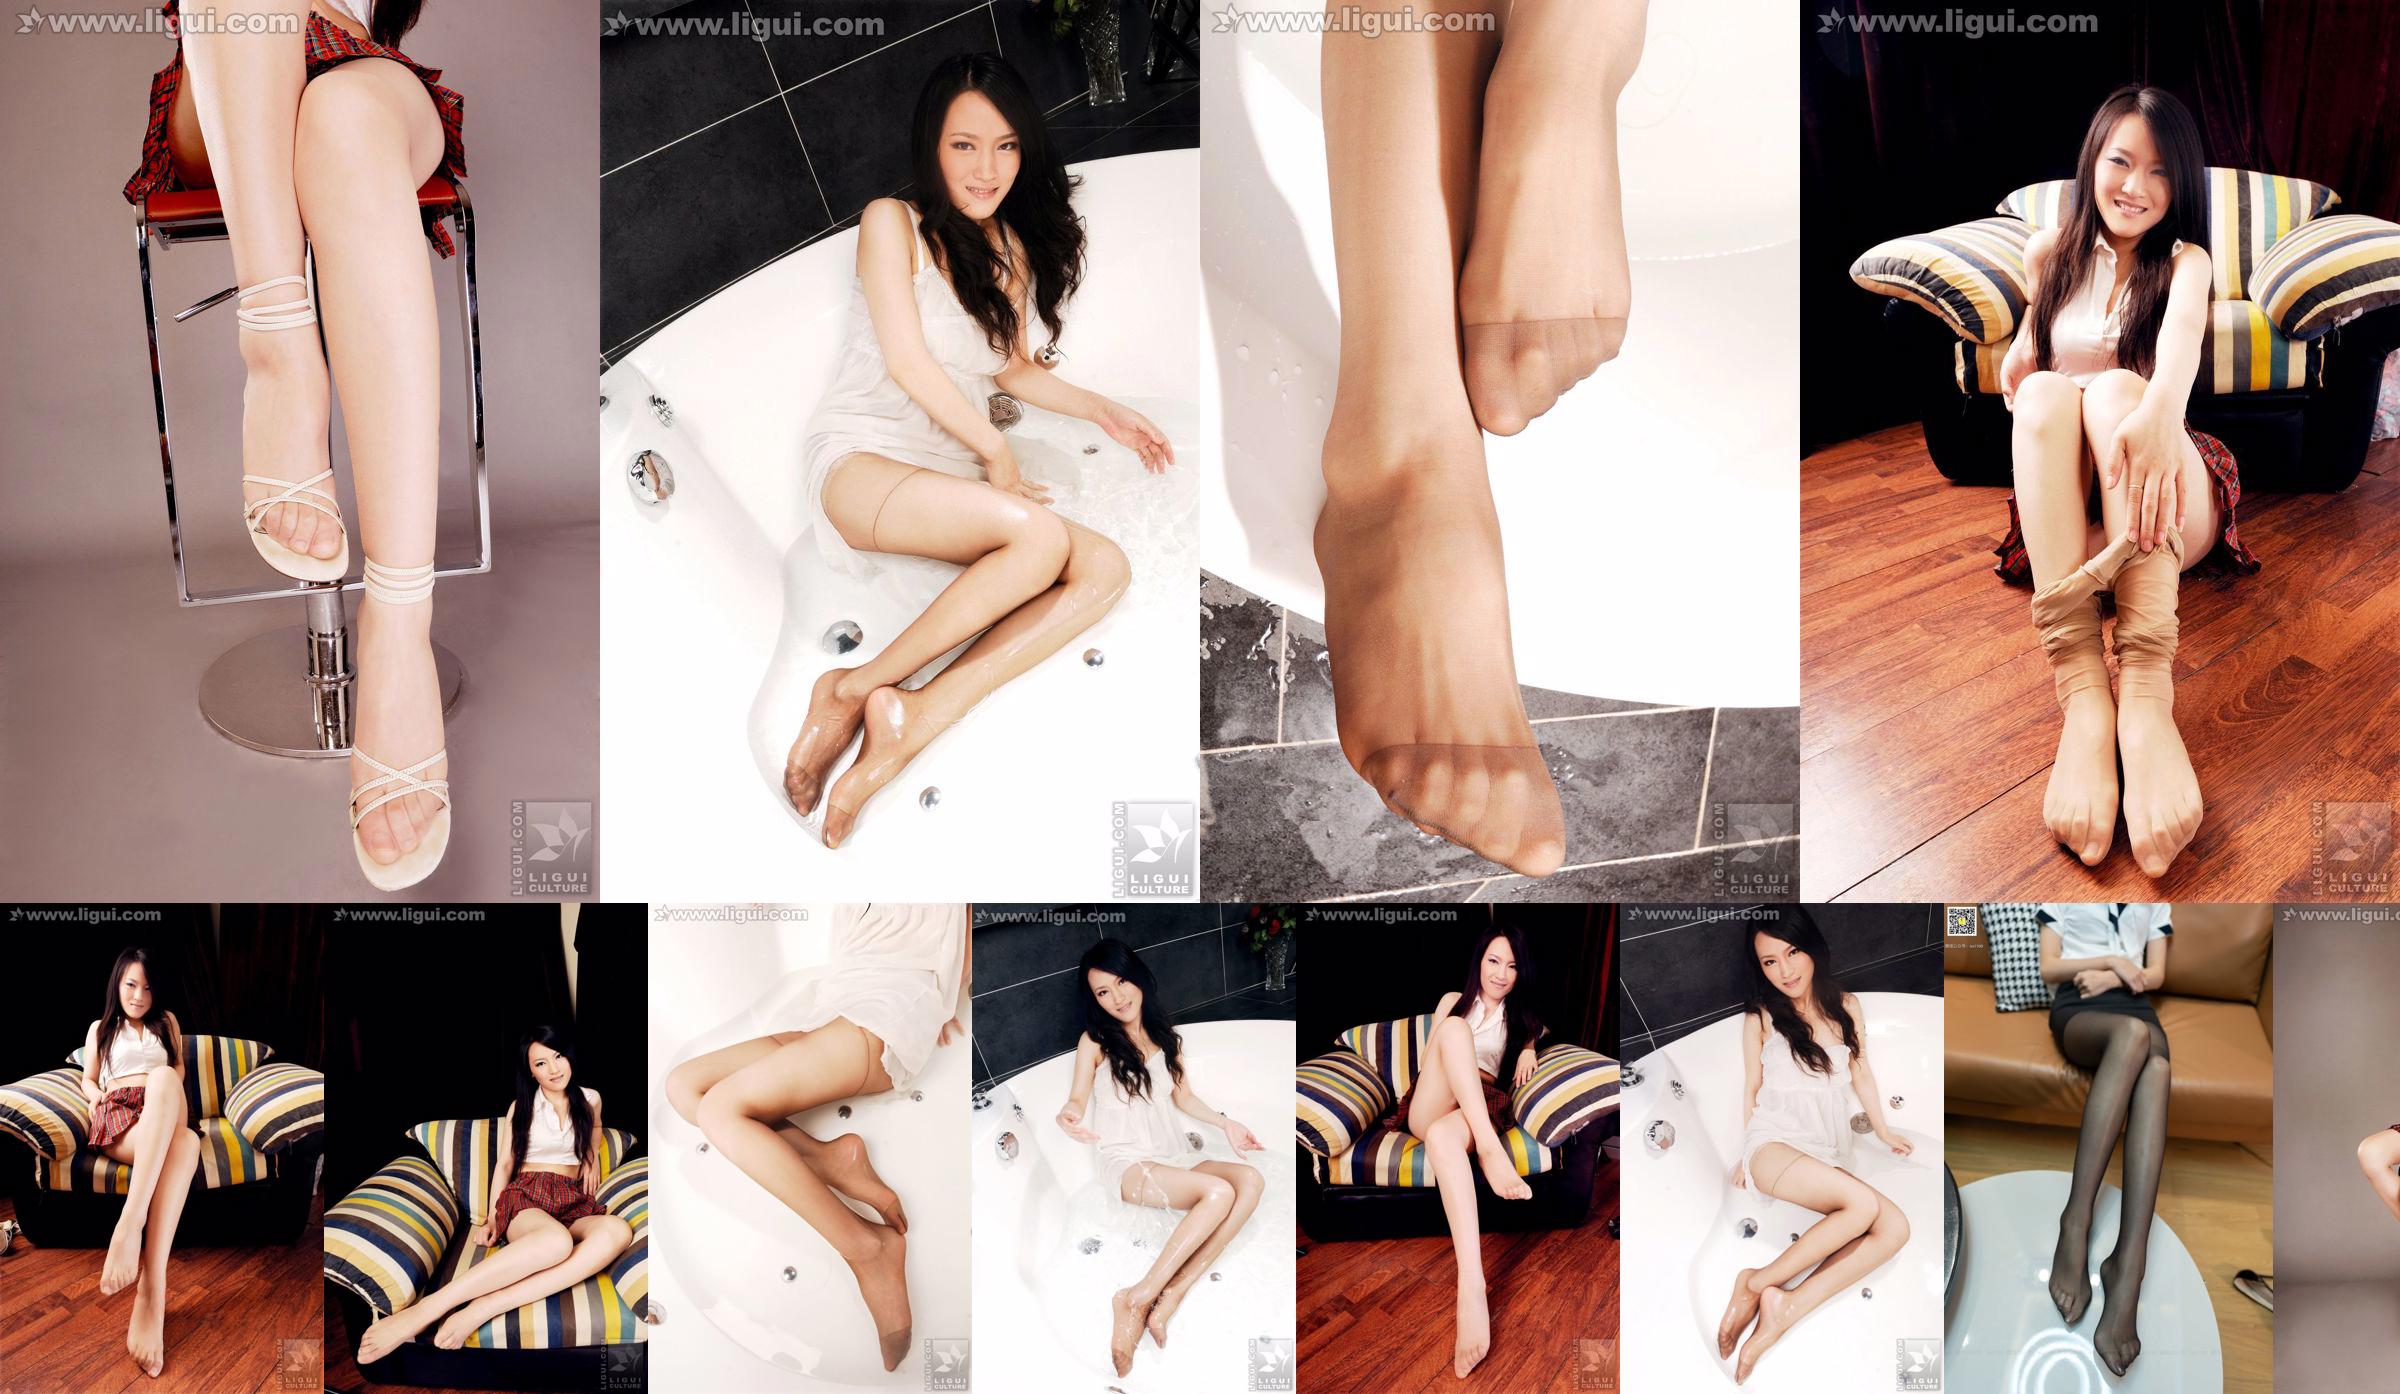 นางแบบเหวินถิง "Sweet and Cute Meat Stockings with High Heels" [丽柜 LiGui] ภาพถ่ายขาสวยและเท้าหยก No.6de818 หน้า 5